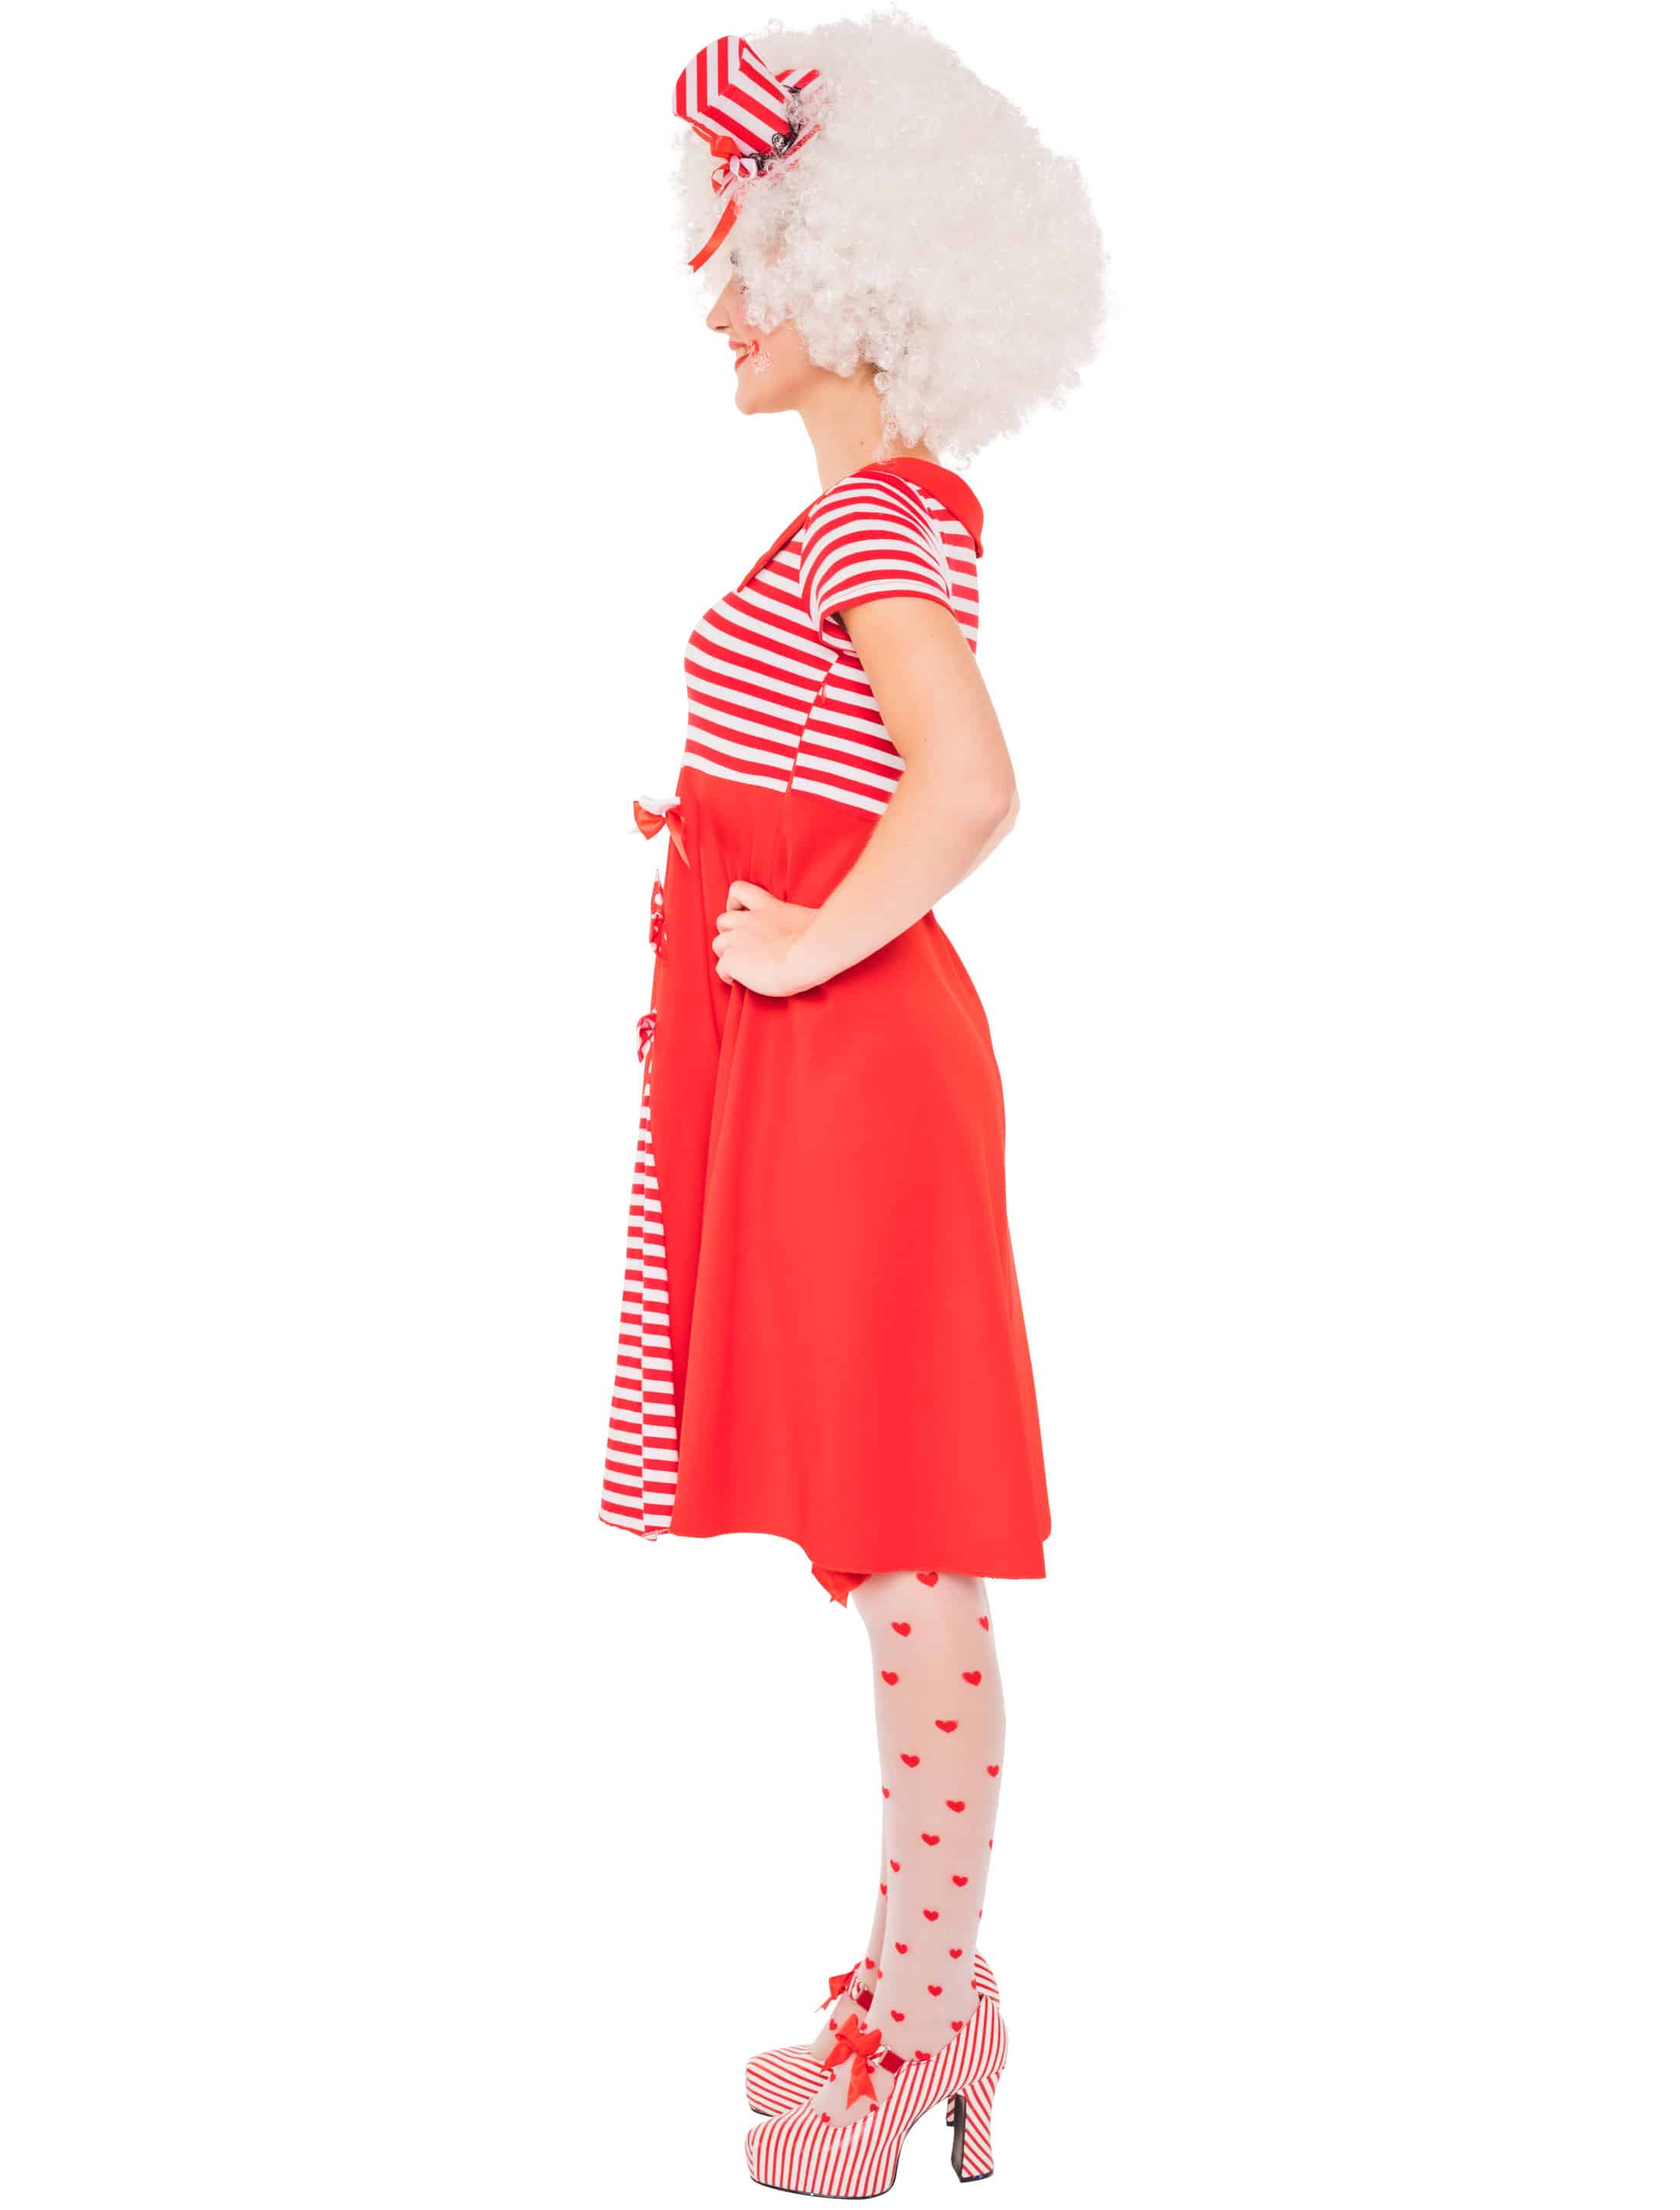 Kleid mit 3 Schleifen Damen rot/weiß S/M